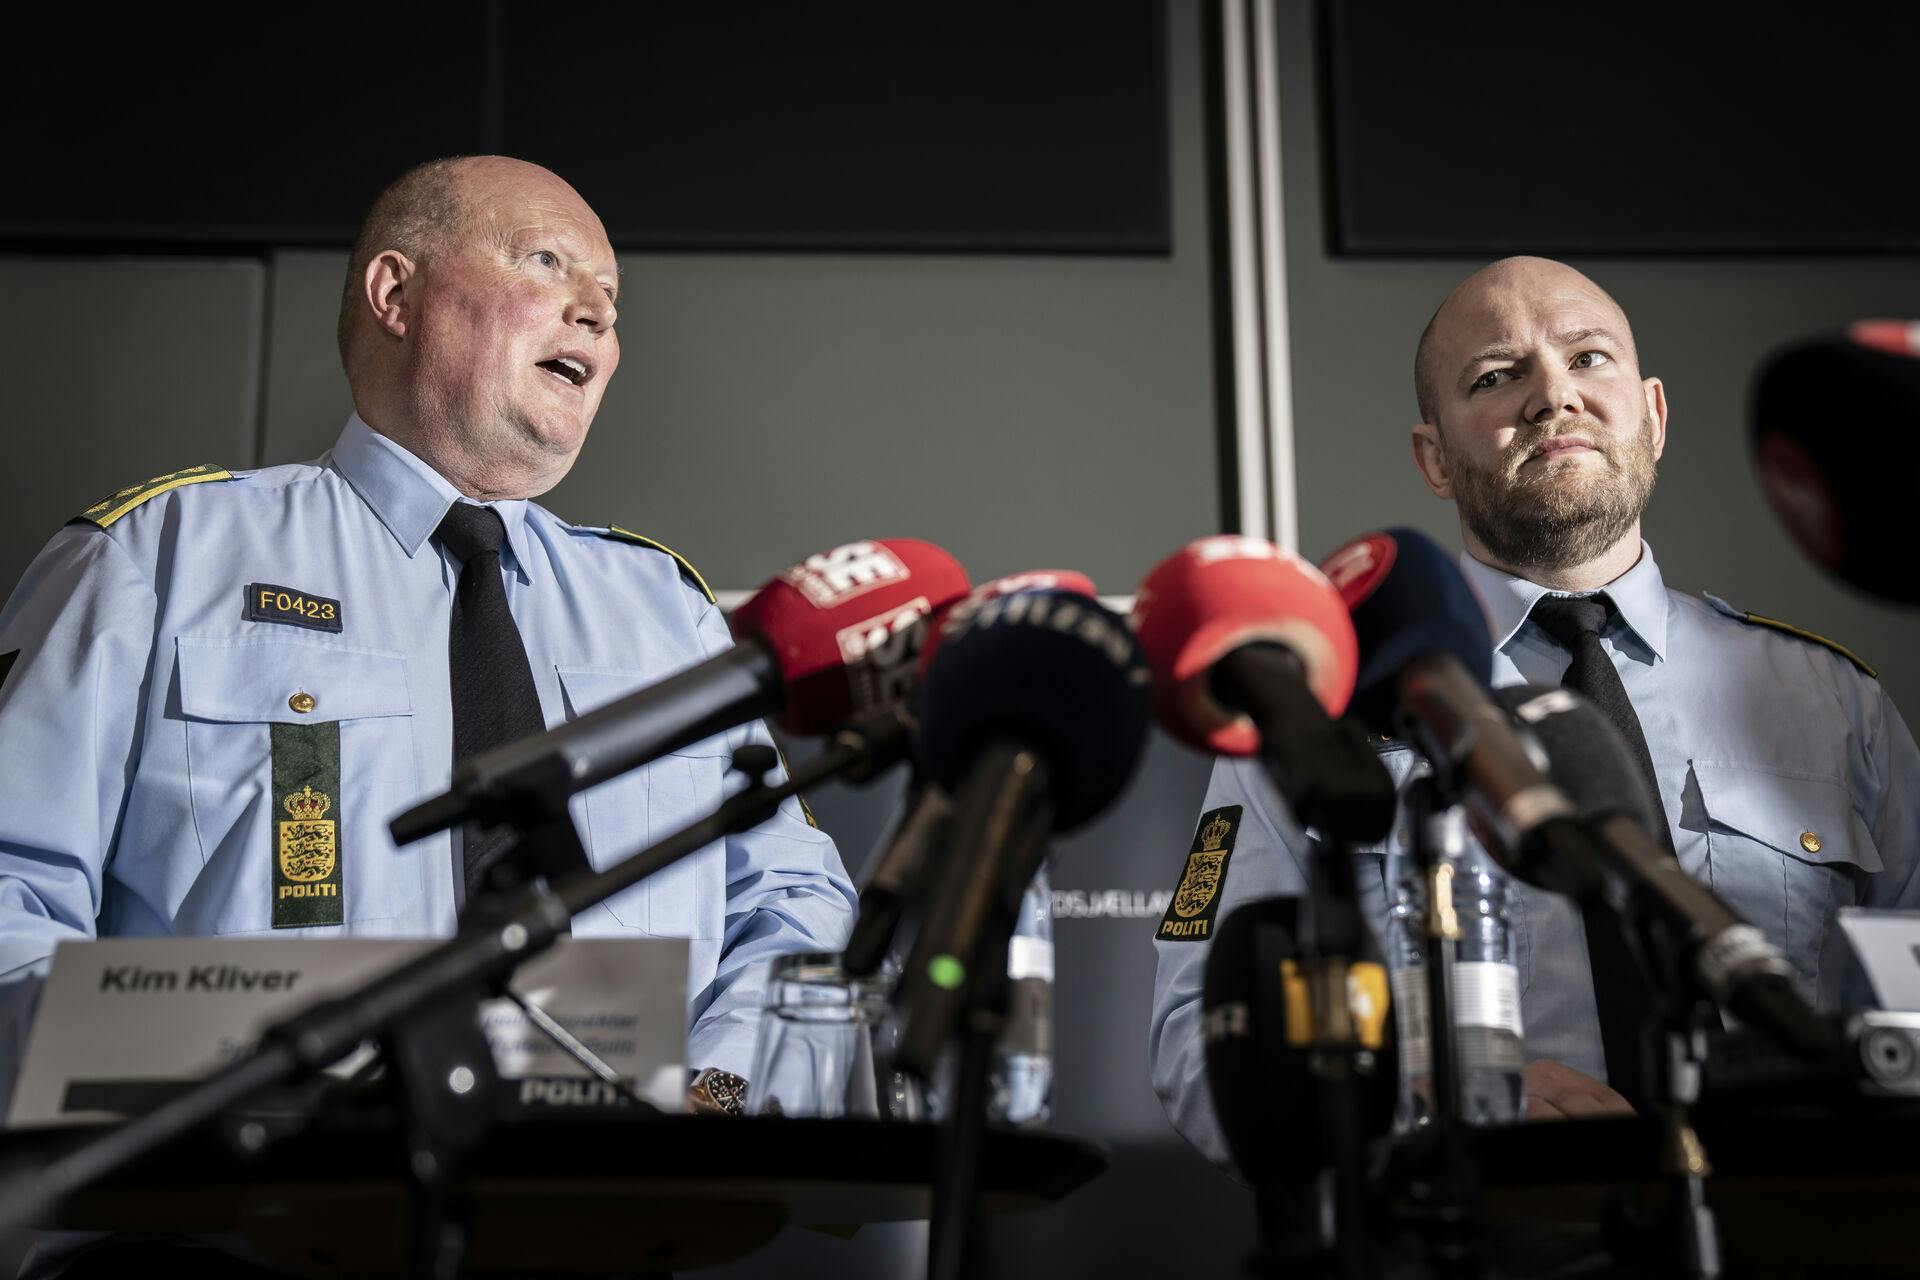 Politiinspektør Kim Kliver og vicepolitiinspektør Rune Nilsson hos Sydsjællands og Lolland-Falsters Politi kunne 26. april meddele, at den 32-årige mand nu også var sigtet i to yderligere sager: Sagen om en 15-årig, der blev overfaldet i november 202